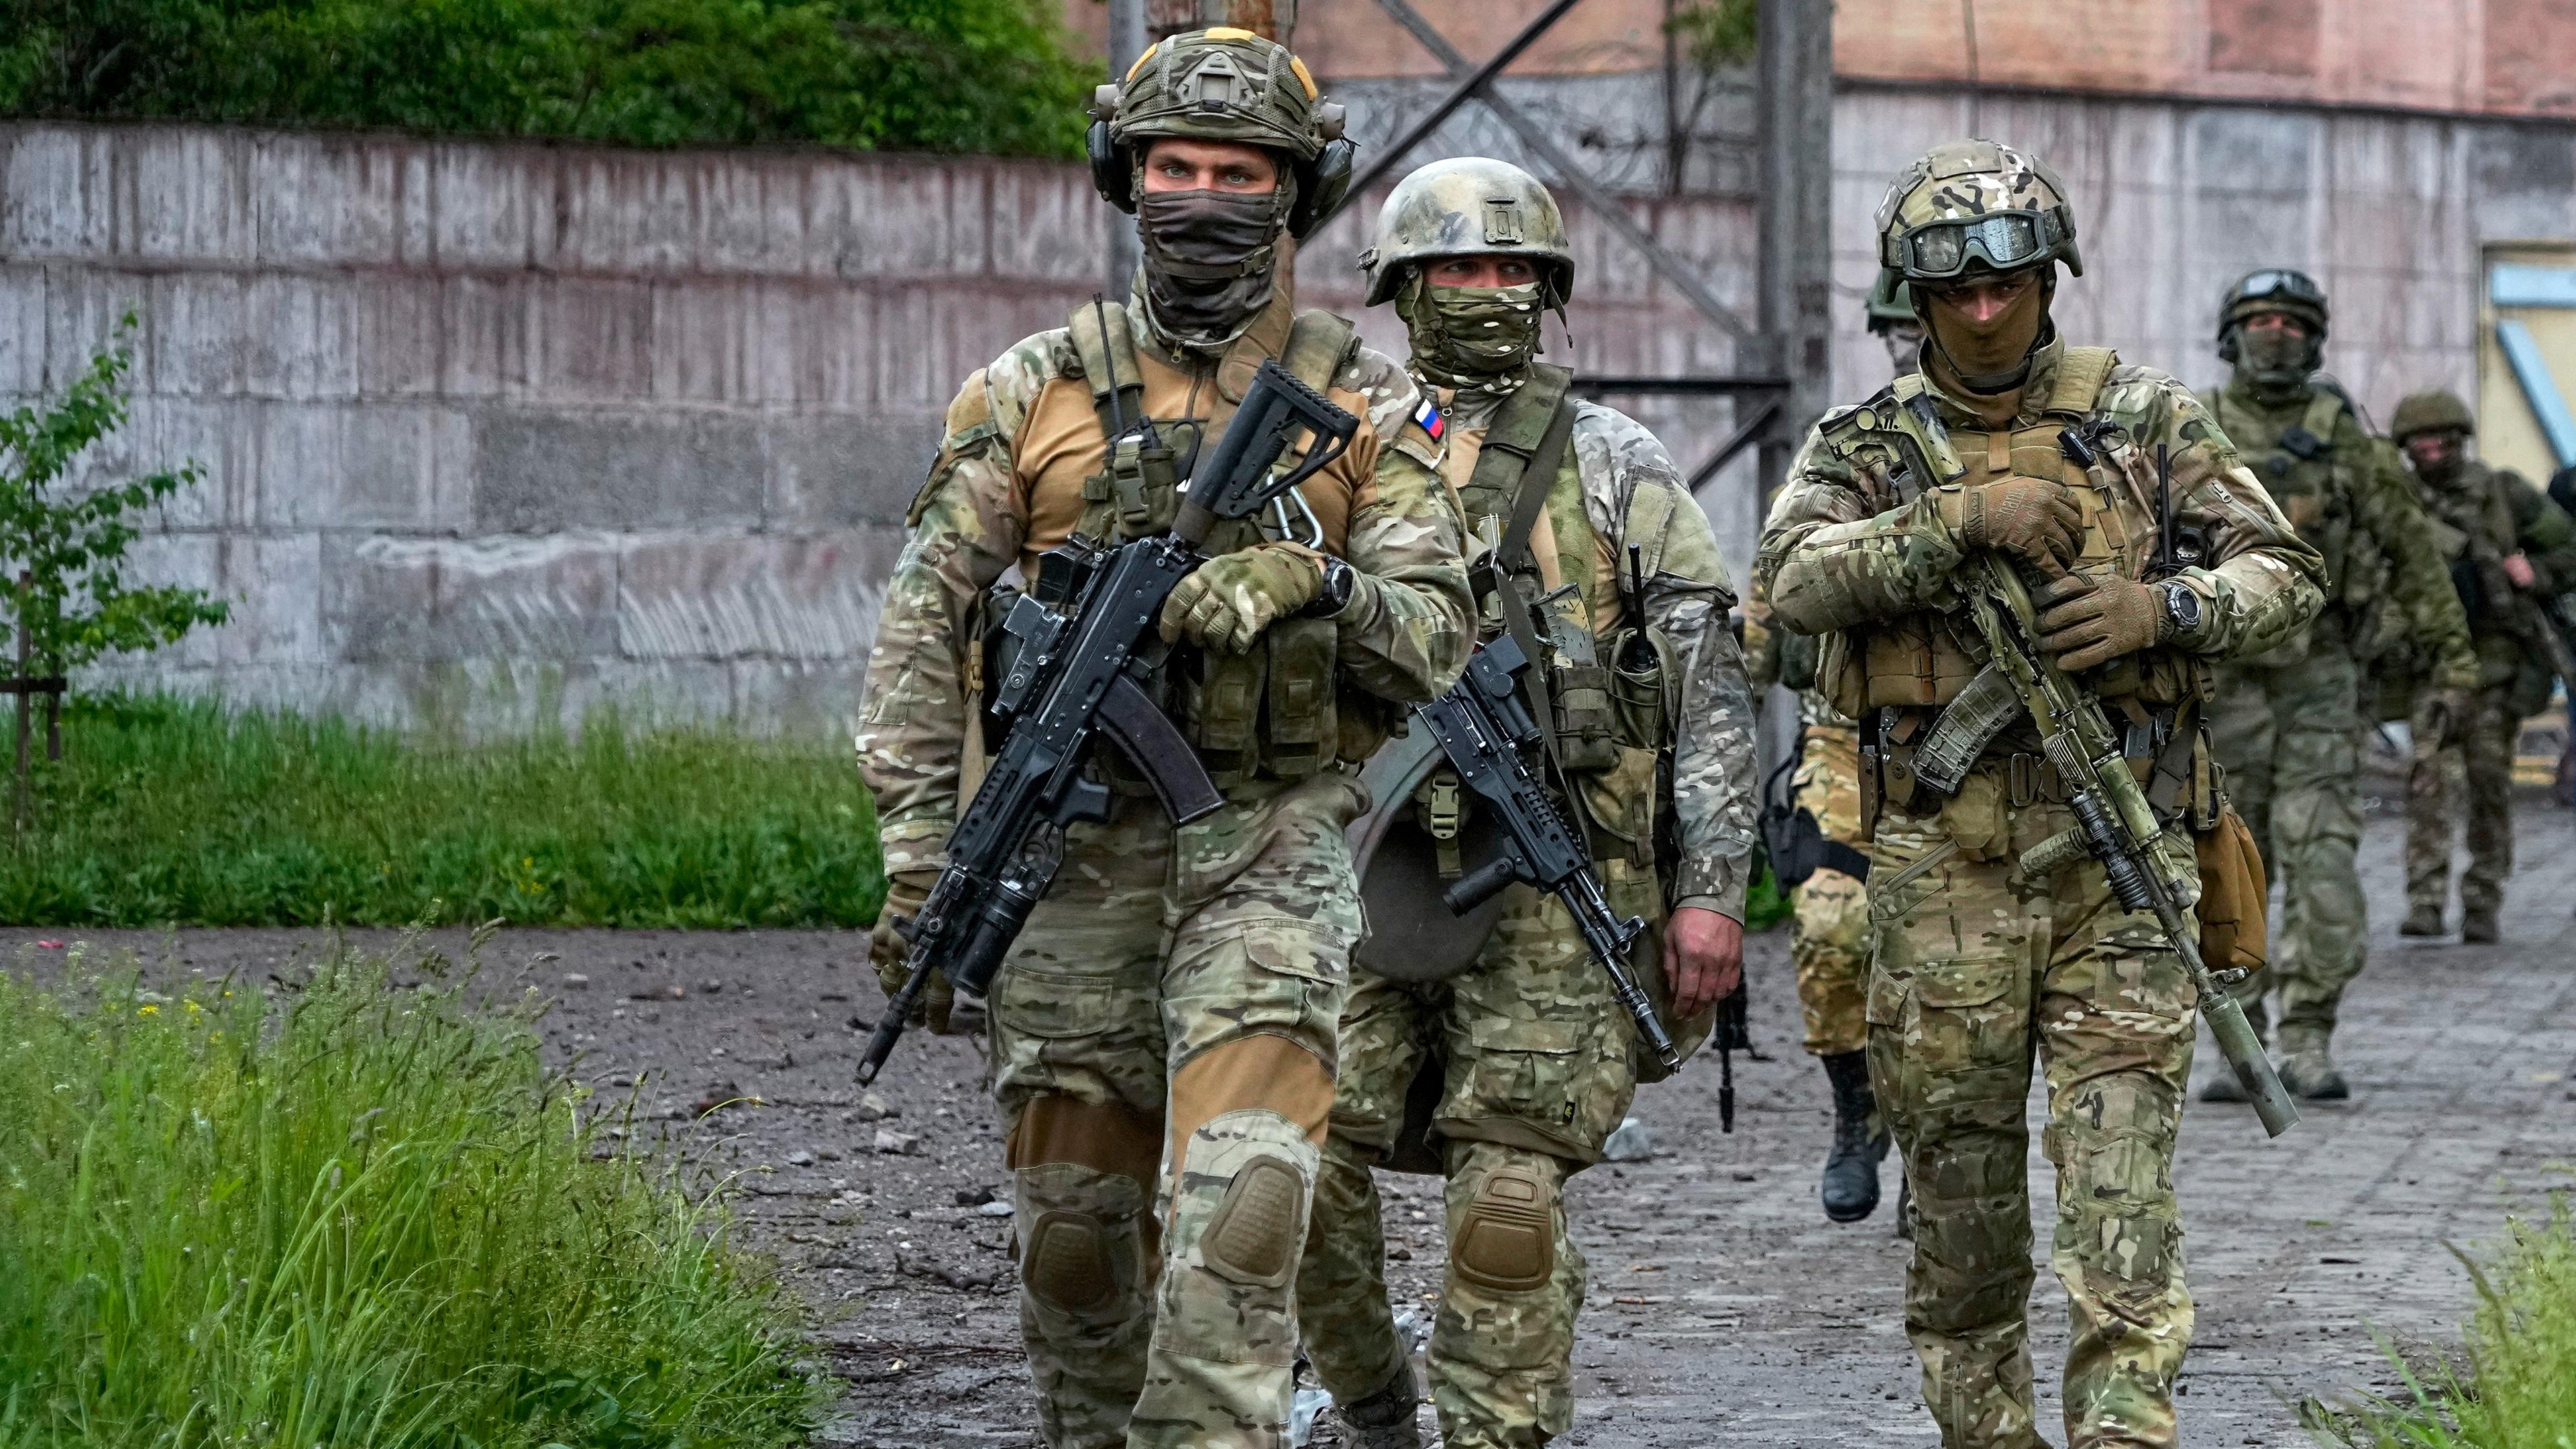 Russische Soldaten gehen durch einen zerstörten Bereich des Iljitsch Eisen- und Stahlwerks Mariupol in Mariupol (Ukraine), aufgenommen am 18.05.2022